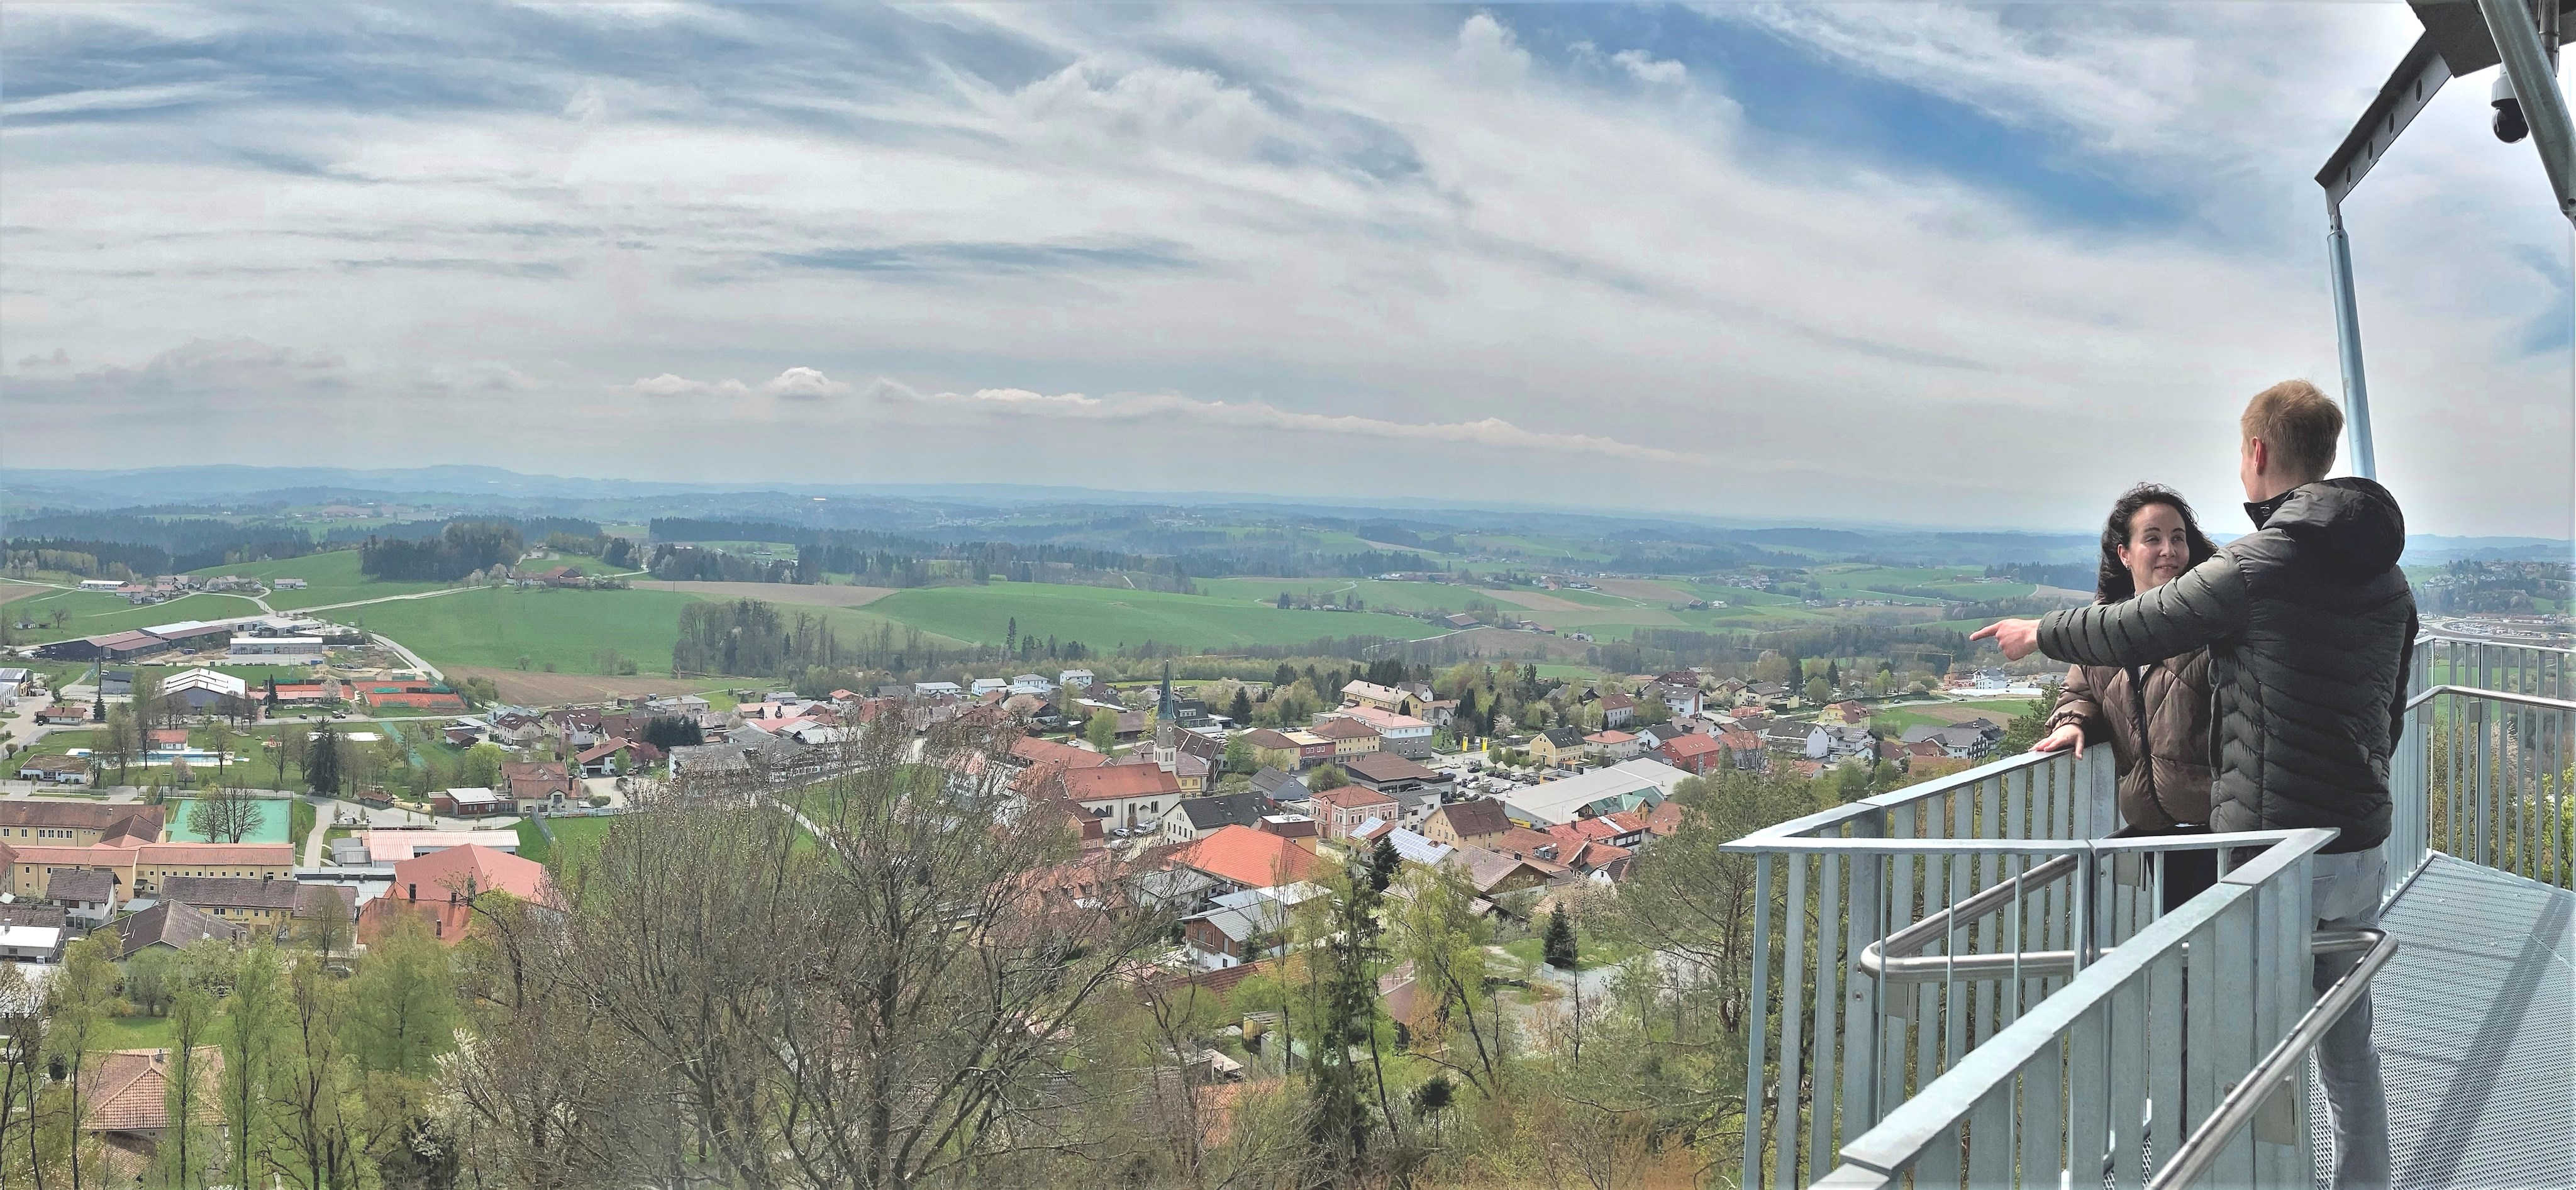 Gute (Tourismus-)Aussichten für und ins Passauer Land, hier vom neuen Aussichtsturm Büchlberg